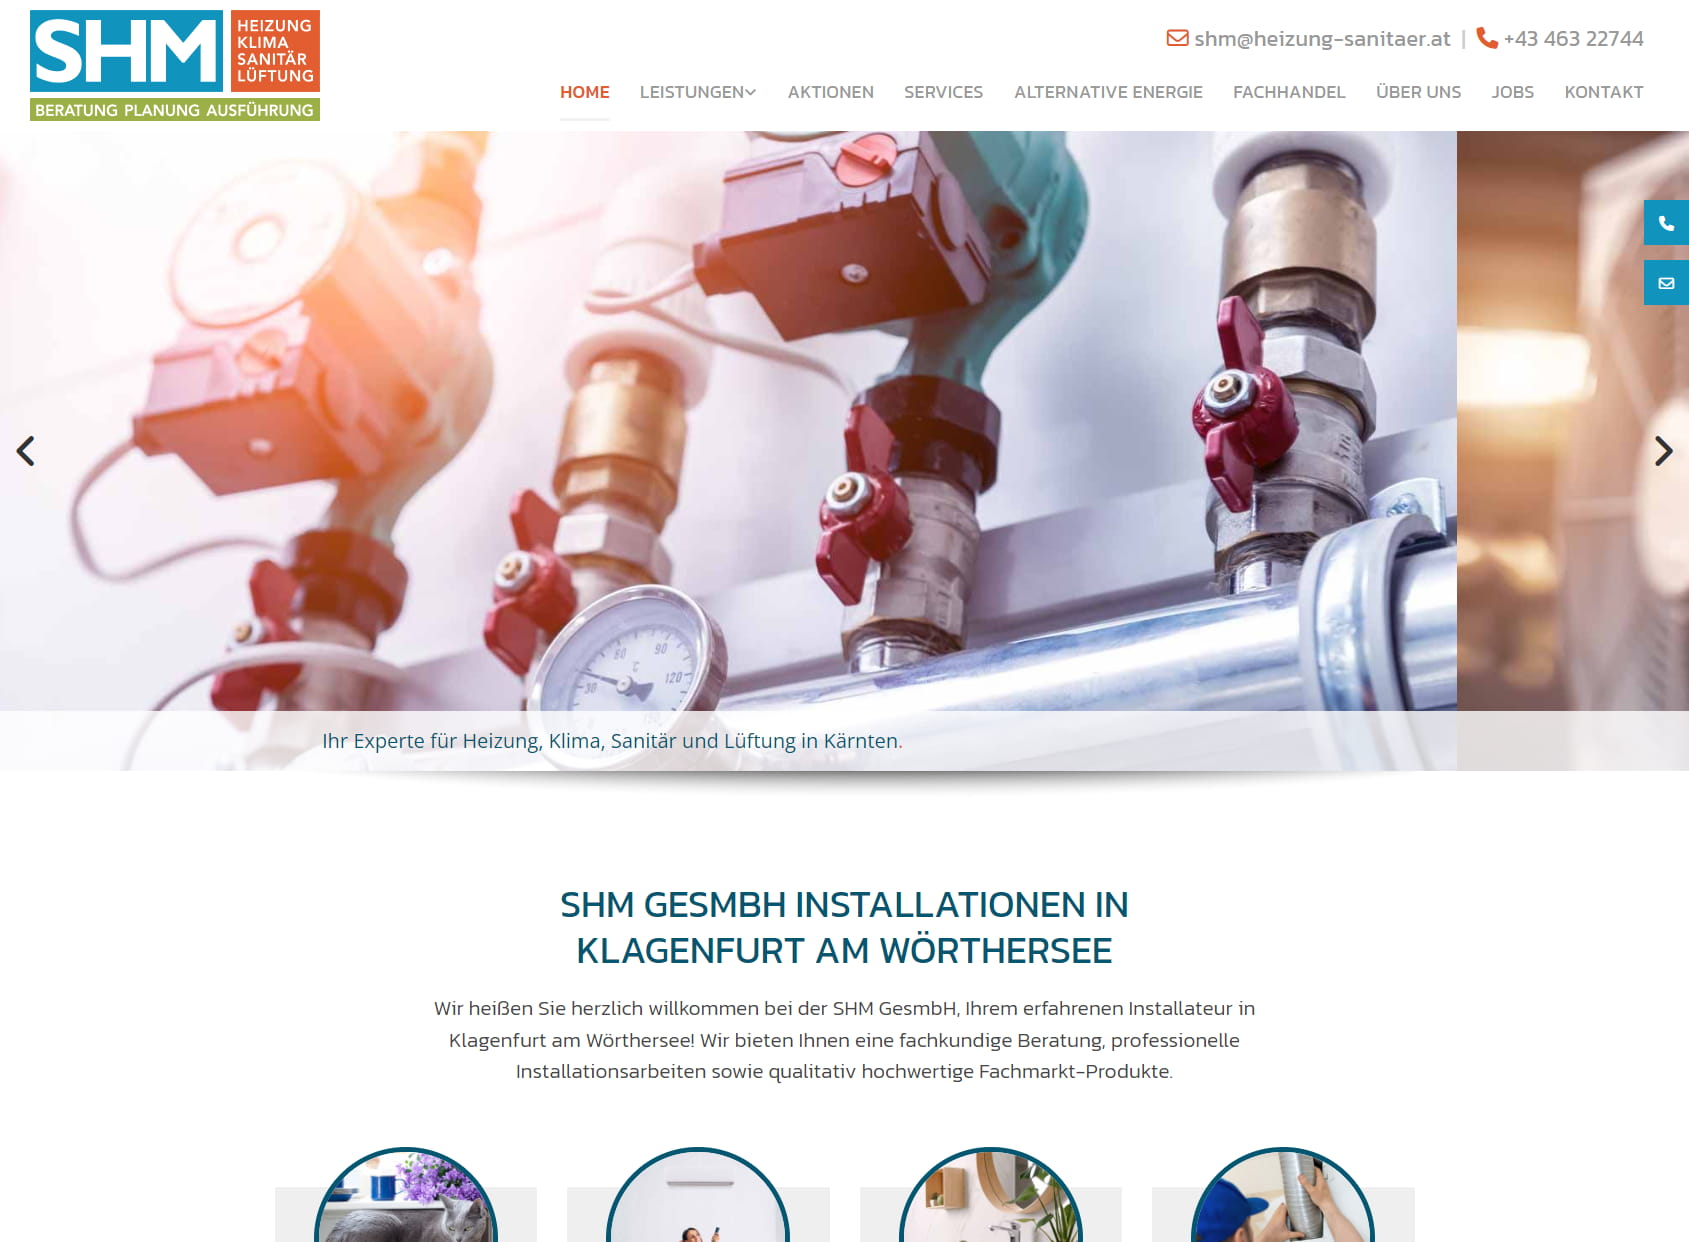 SHM GmbH - Ihr Installateur und Fachmarkt für Heizung, Klima, Sanitär, Lüftung